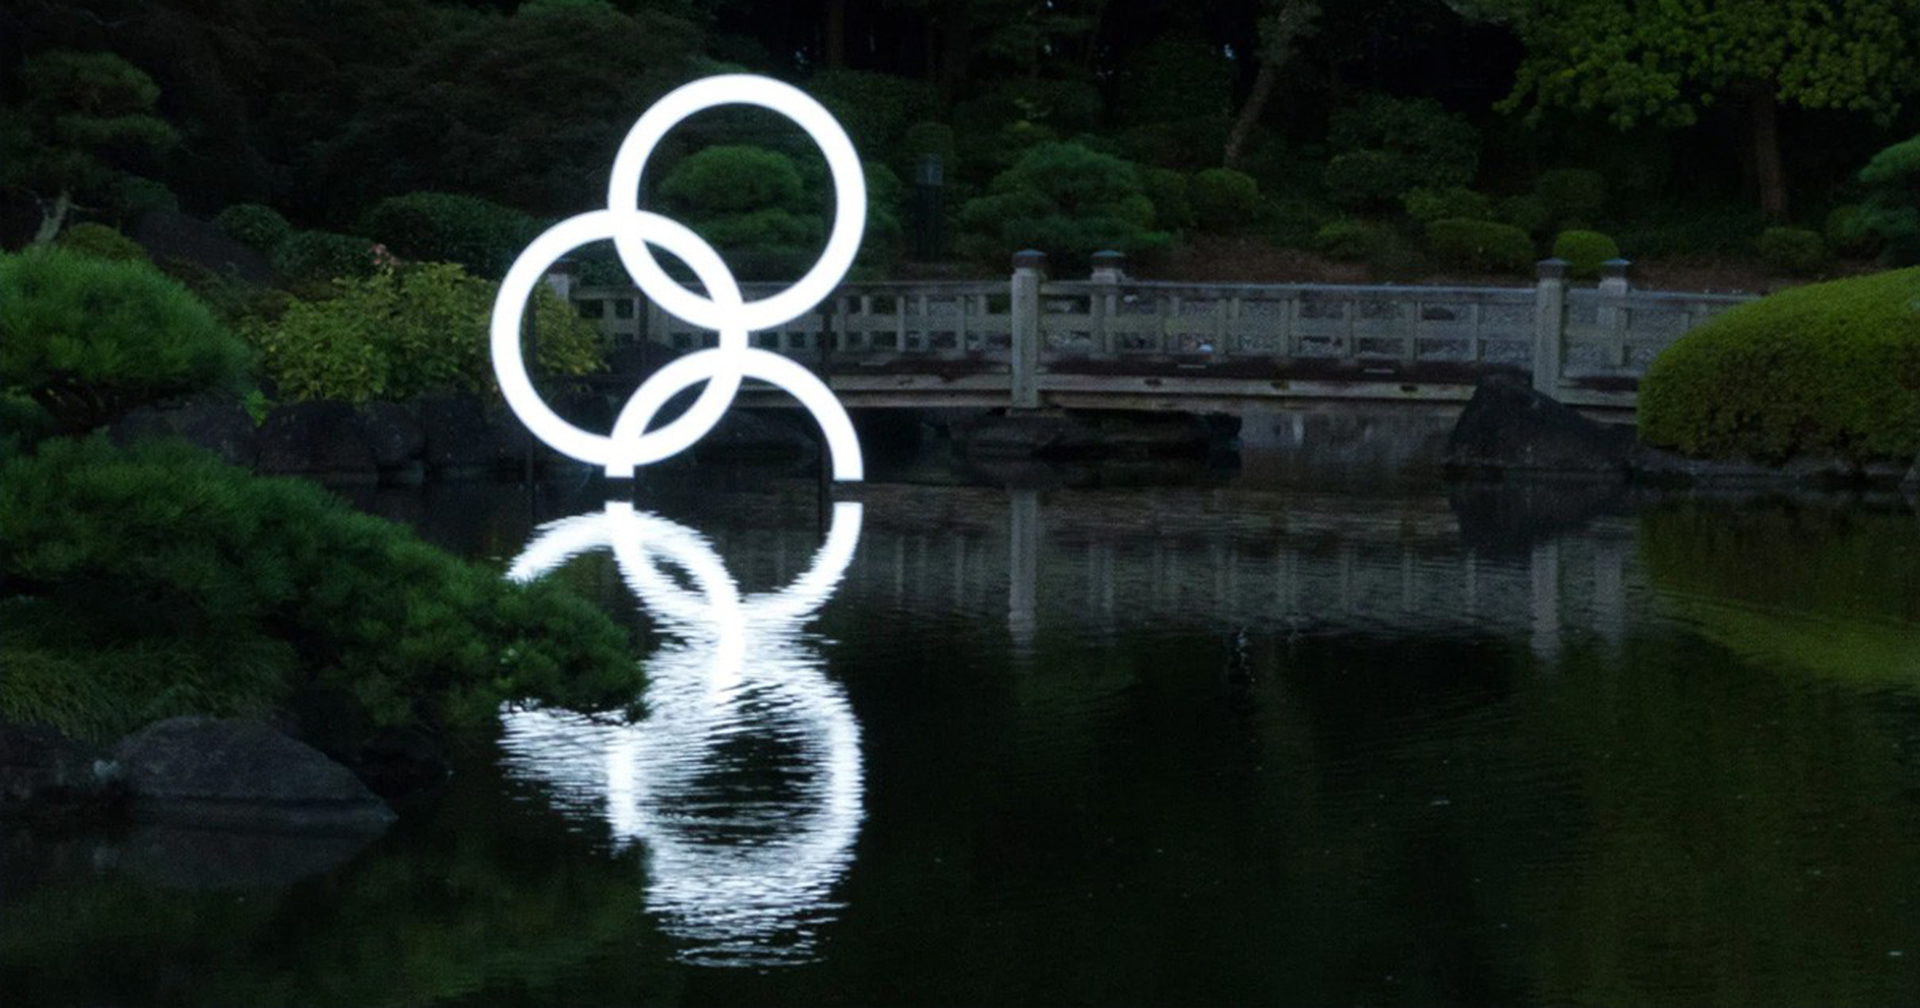 5 ห่วงจมน้ำผลงานศิลปินชาวญี่ปุ่น สะท้อนความแตกแยกในประเทศหลังจบโอลิมปิก